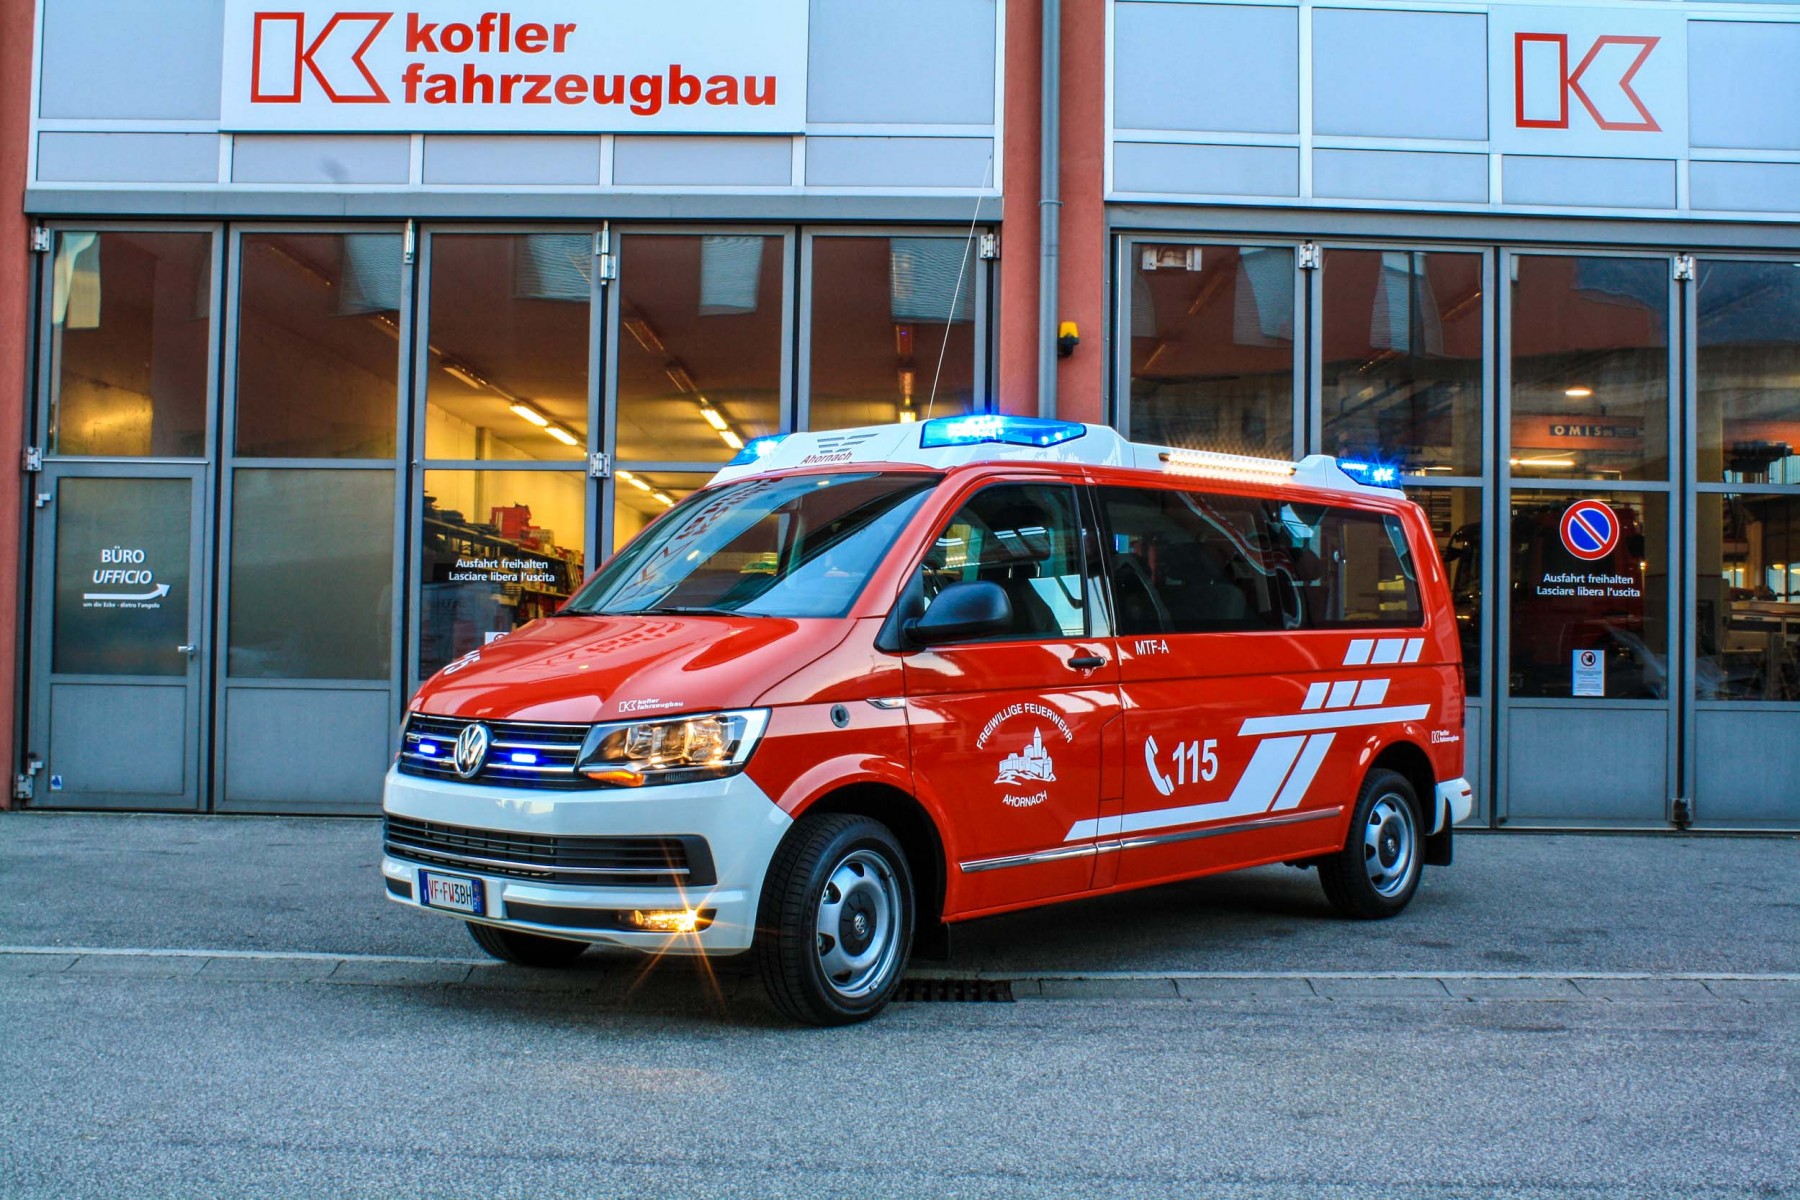 FF-Ahornach-Kofler-Fahrzeugbau